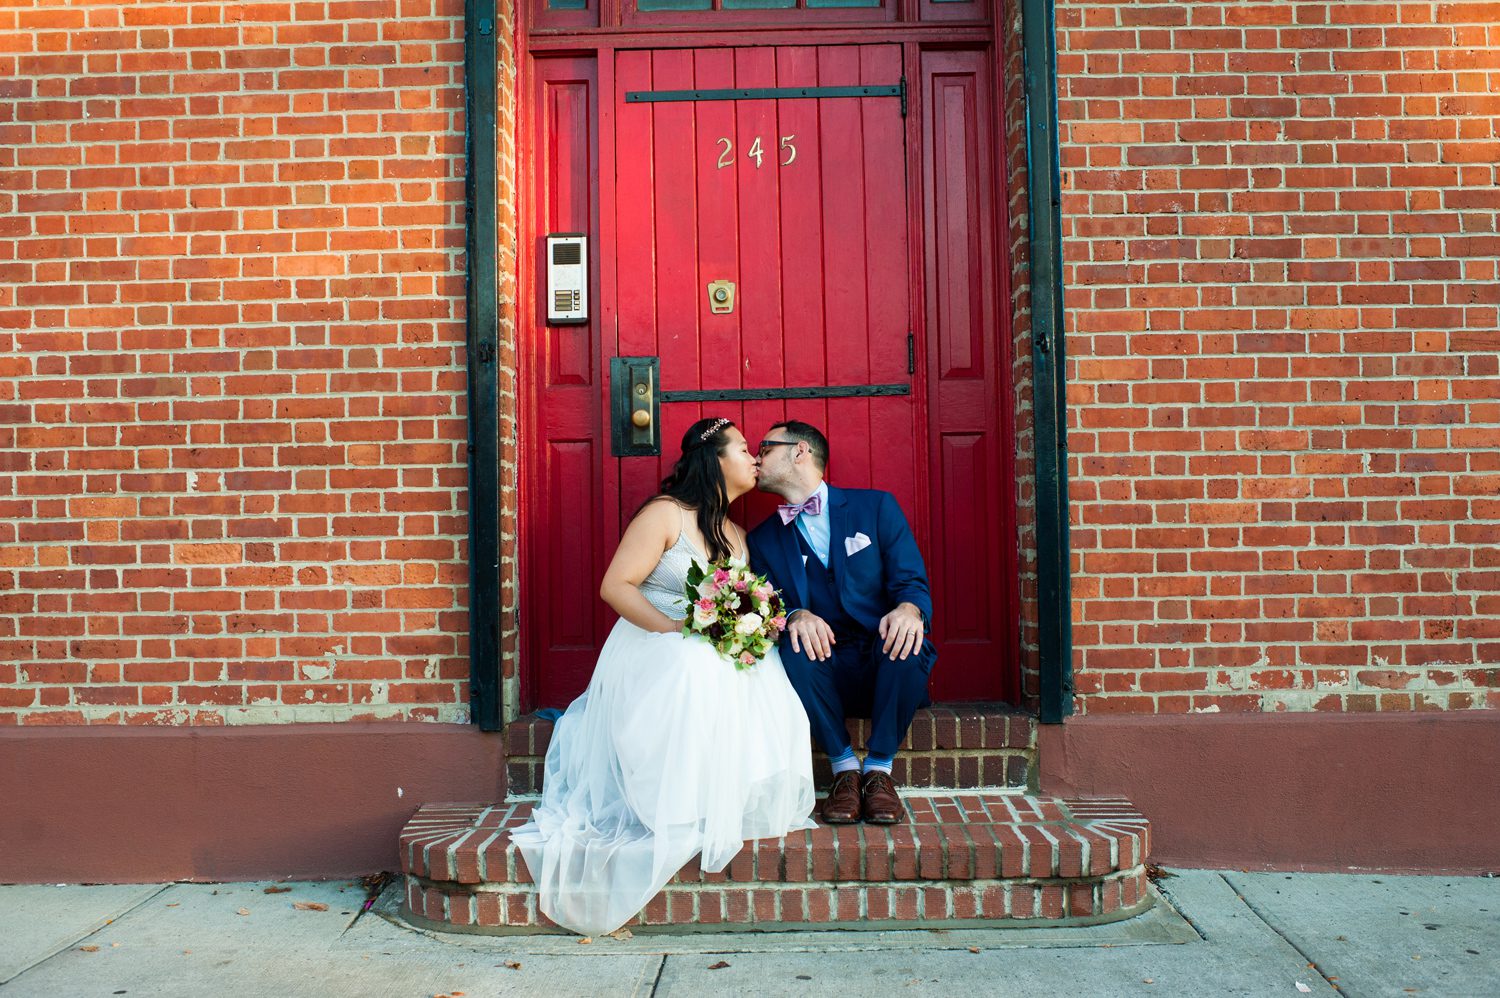 Best Neighborhoods for Wedding Photos in NYC